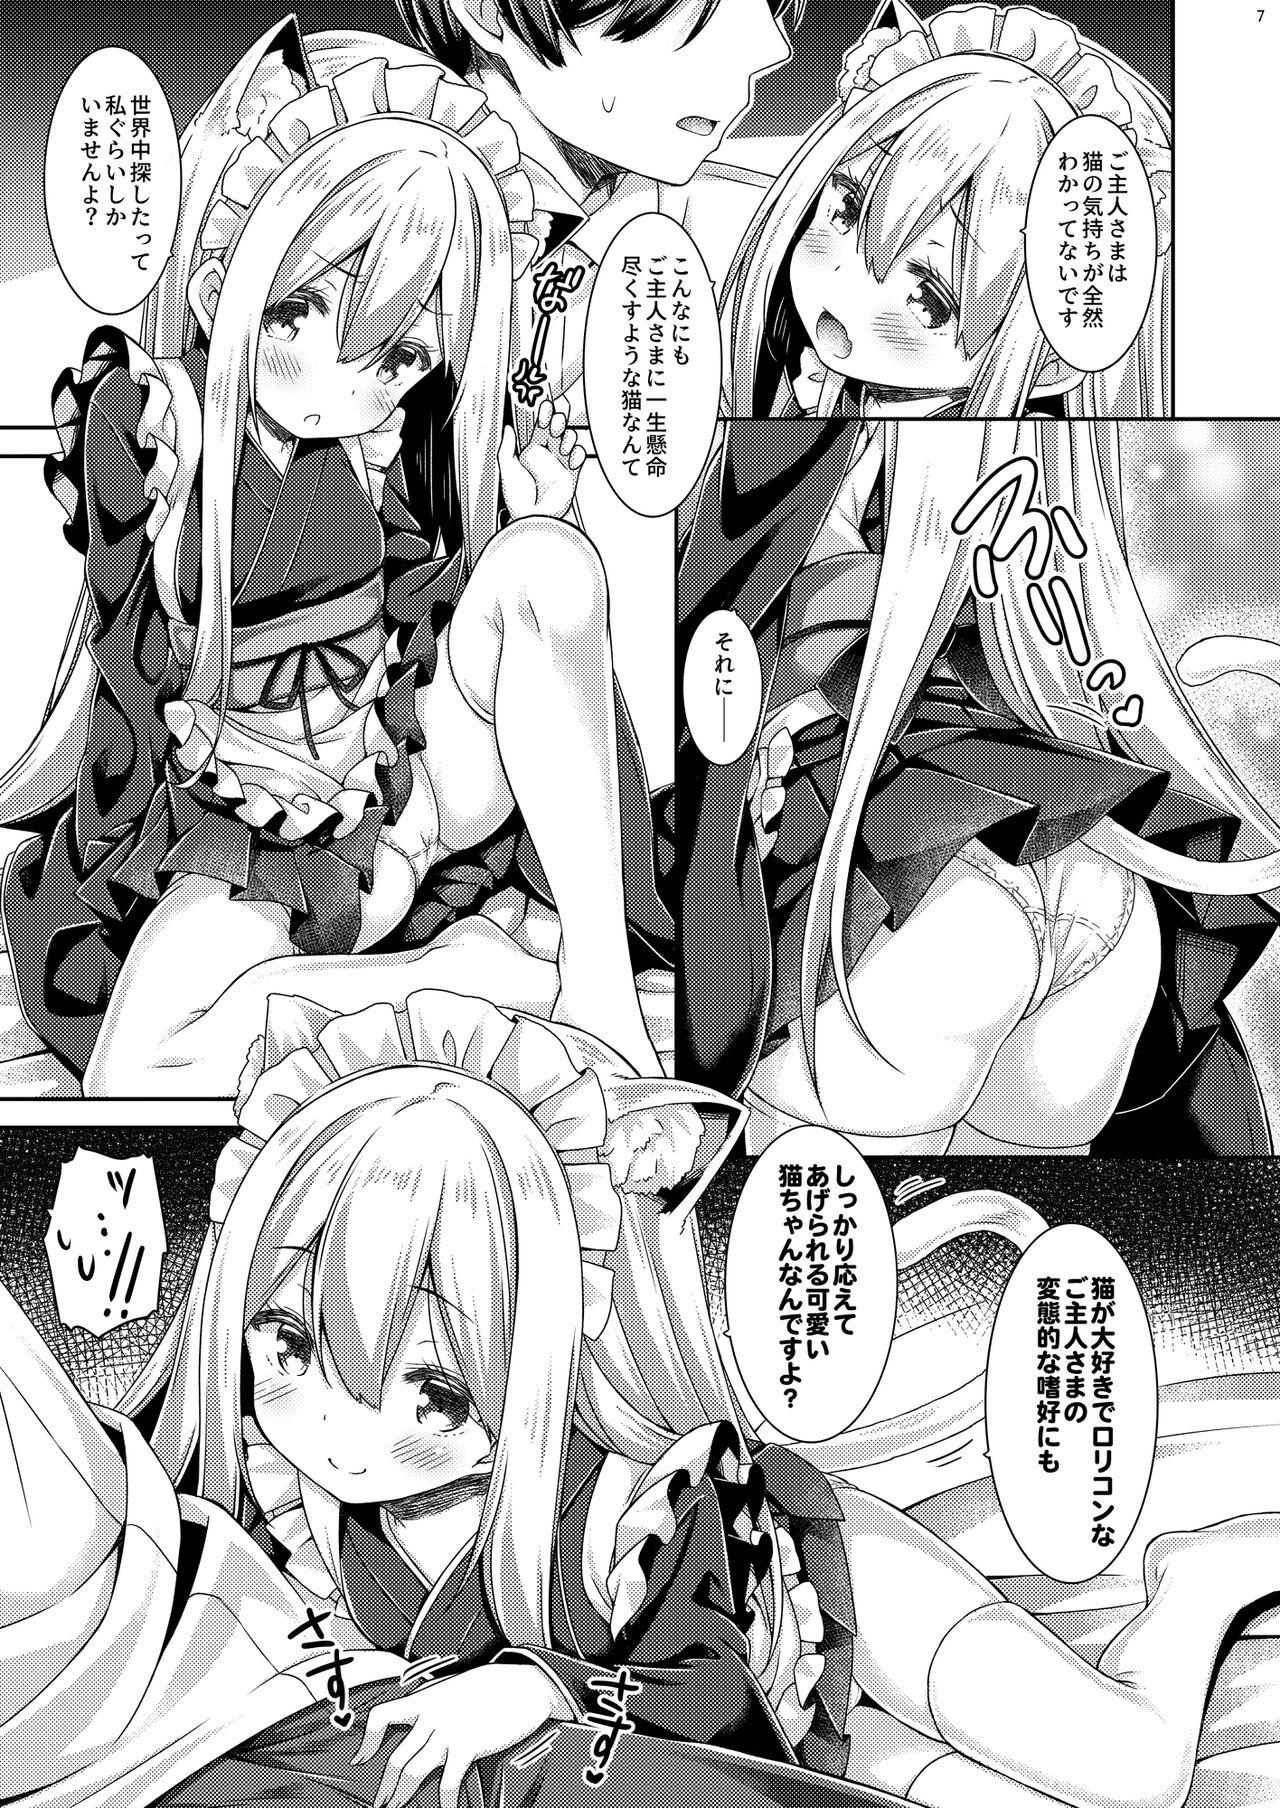 Parties Anata no Neko-chan Maid. Butt Plug - Page 8